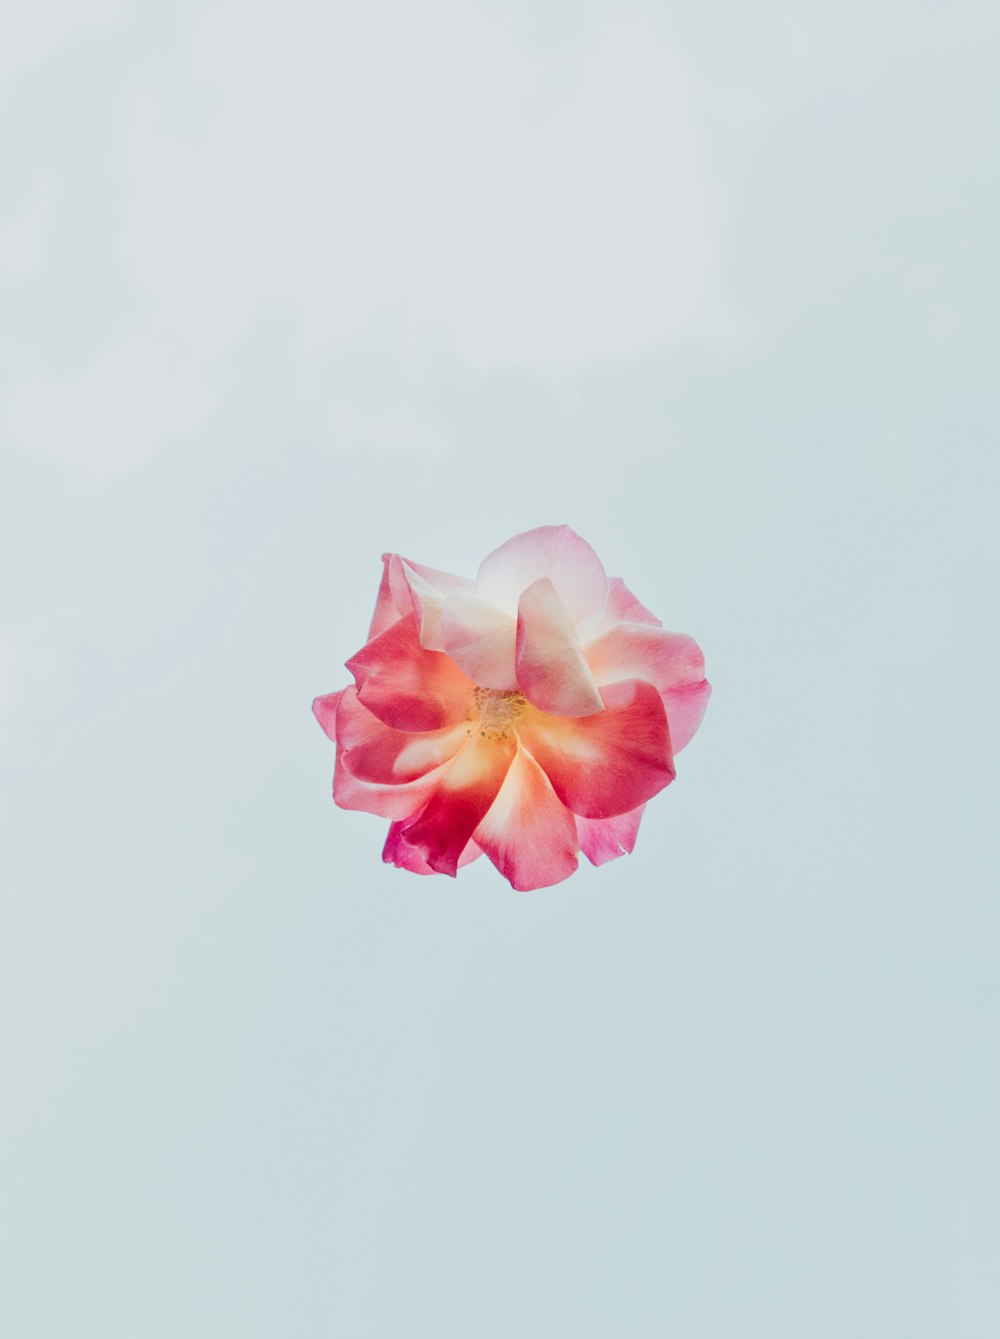 Fotografía de primer plano de flores de pétalos rojos y blancos